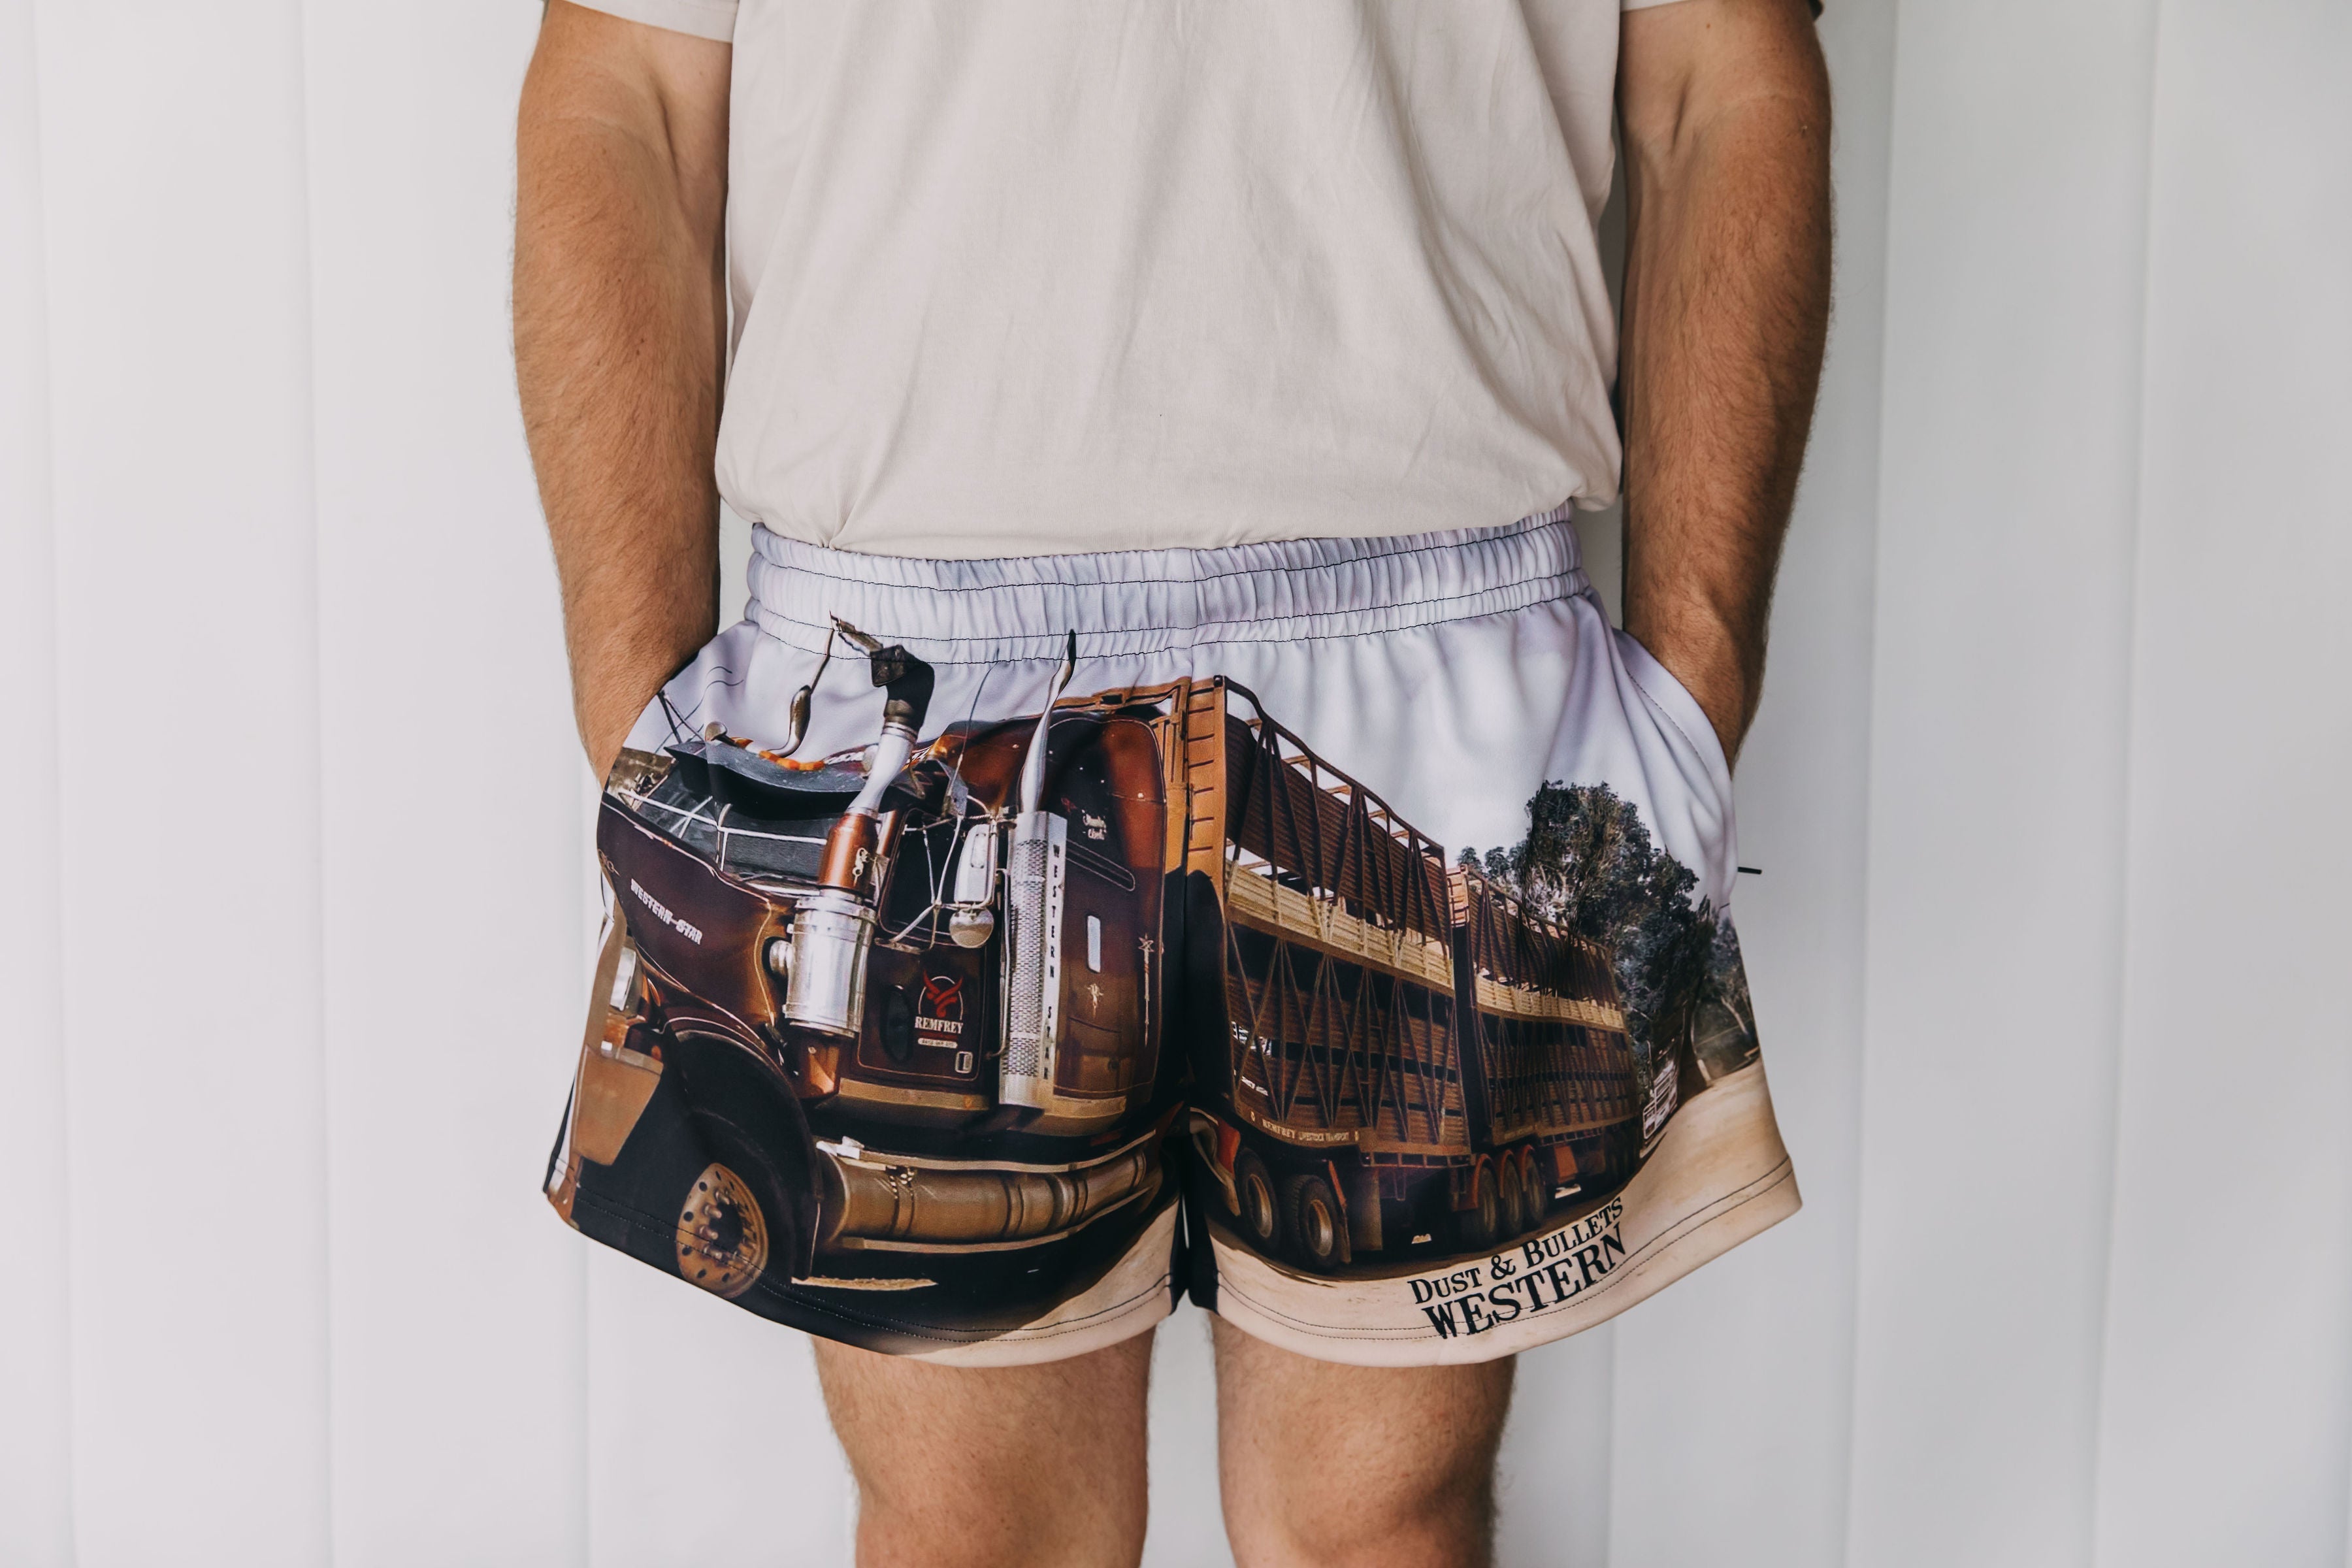 Dusty Trucker Footy Shorts